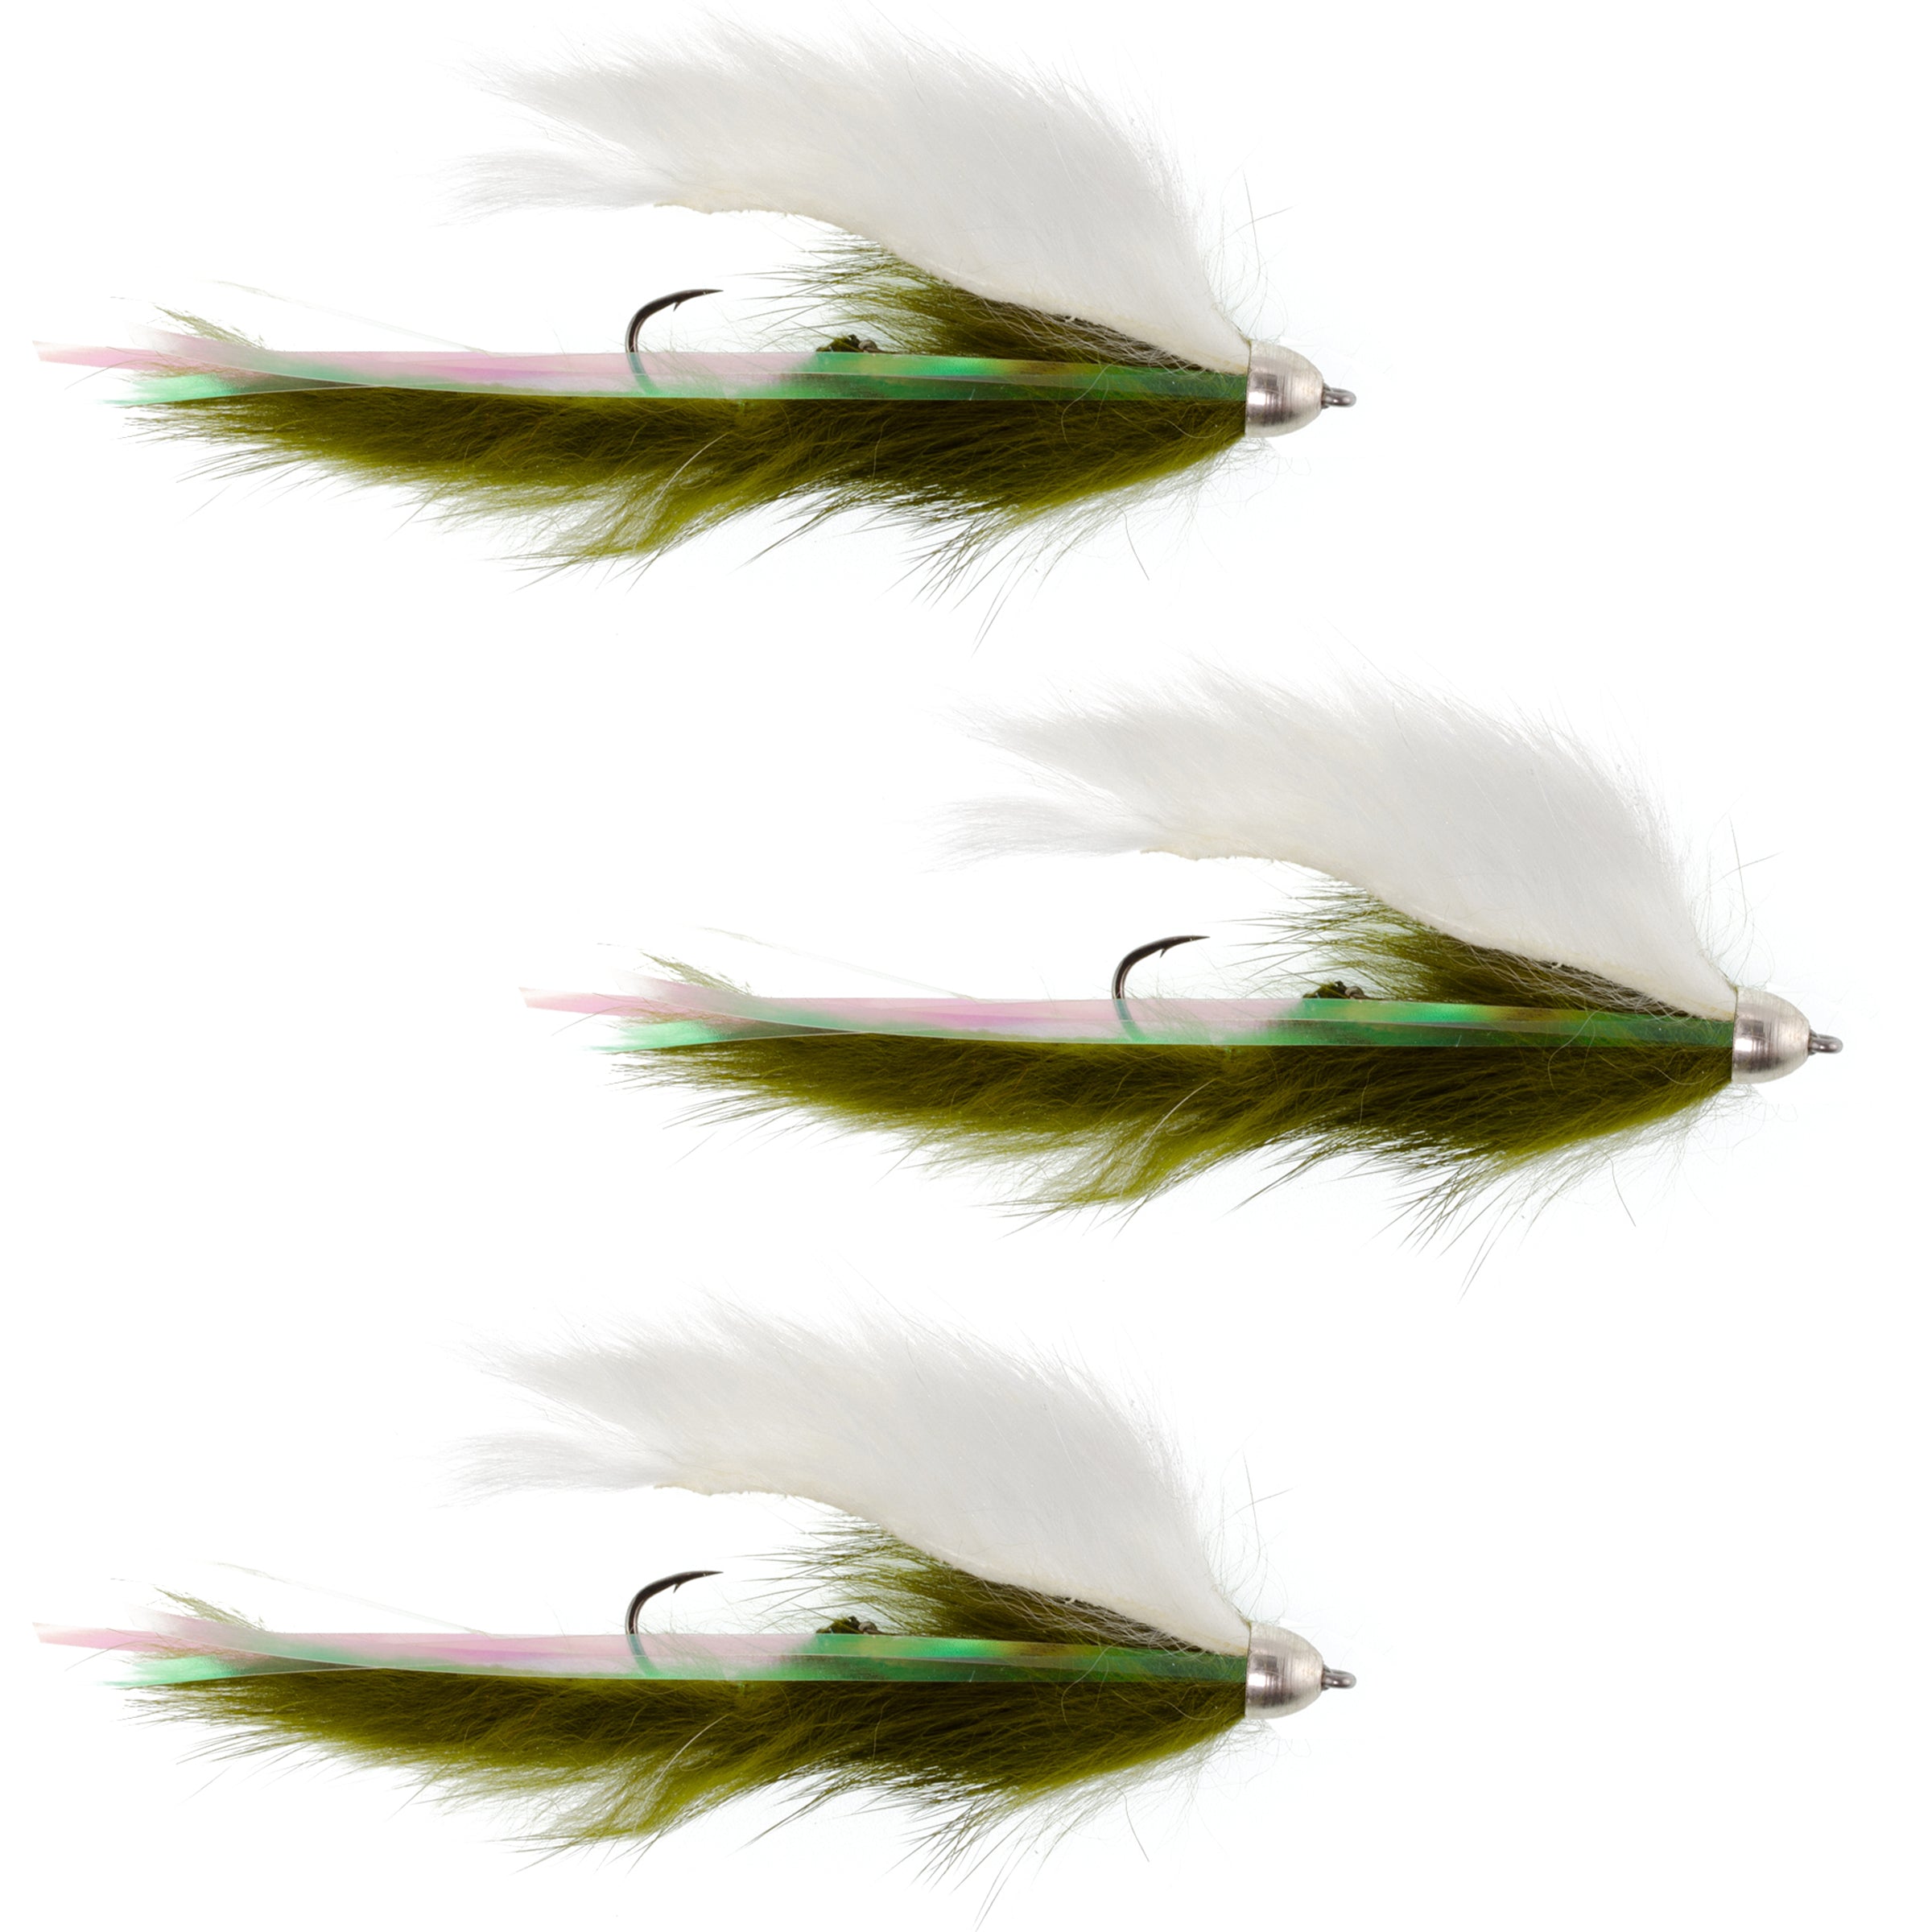 Moscas Dolly Llama Stinger Streamer – 3 moscas de pesca con mosca de trucha arcoíris blanca y verde oliva – Tamaño del gancho 4 